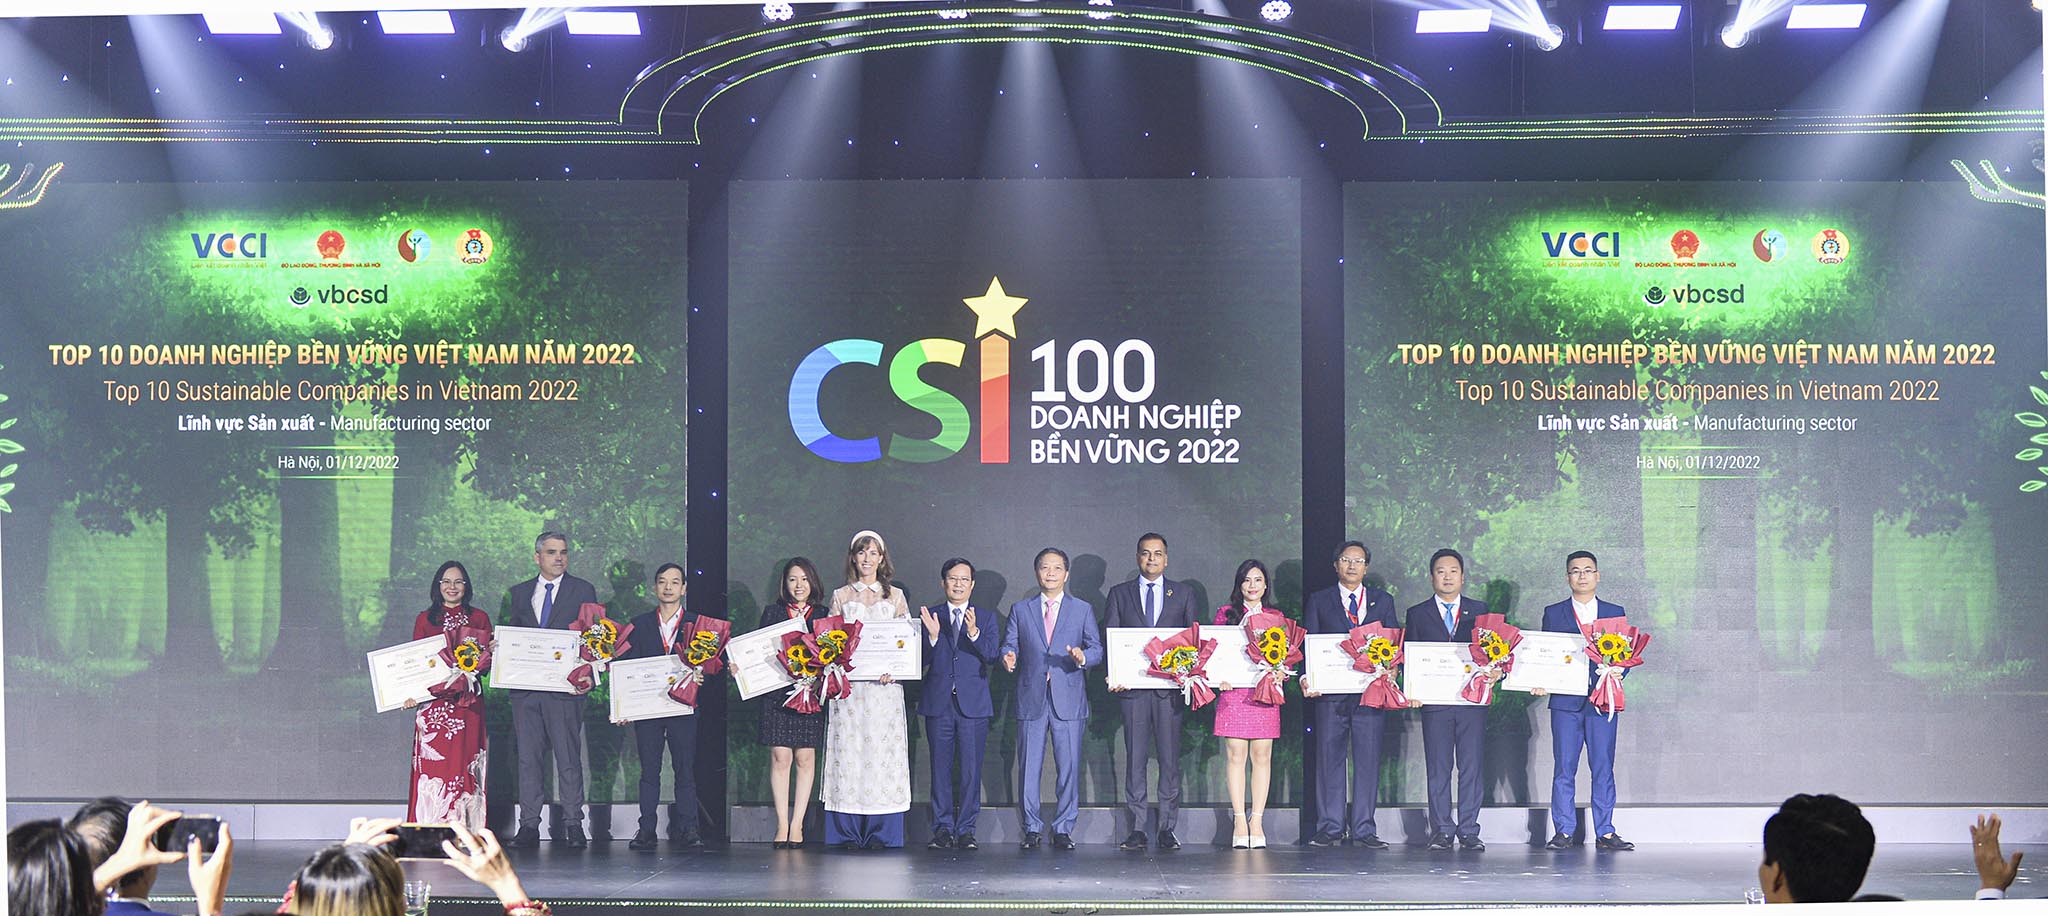 HEINEKEN Việt Nam được vinh danh TOP 2 tại Lễ trao giải CSI 2022, đánh dấu năm thứ 7 liên tiếp là một trong những doanh nghiệp phát triển bền vững nhất tại Việt Nam